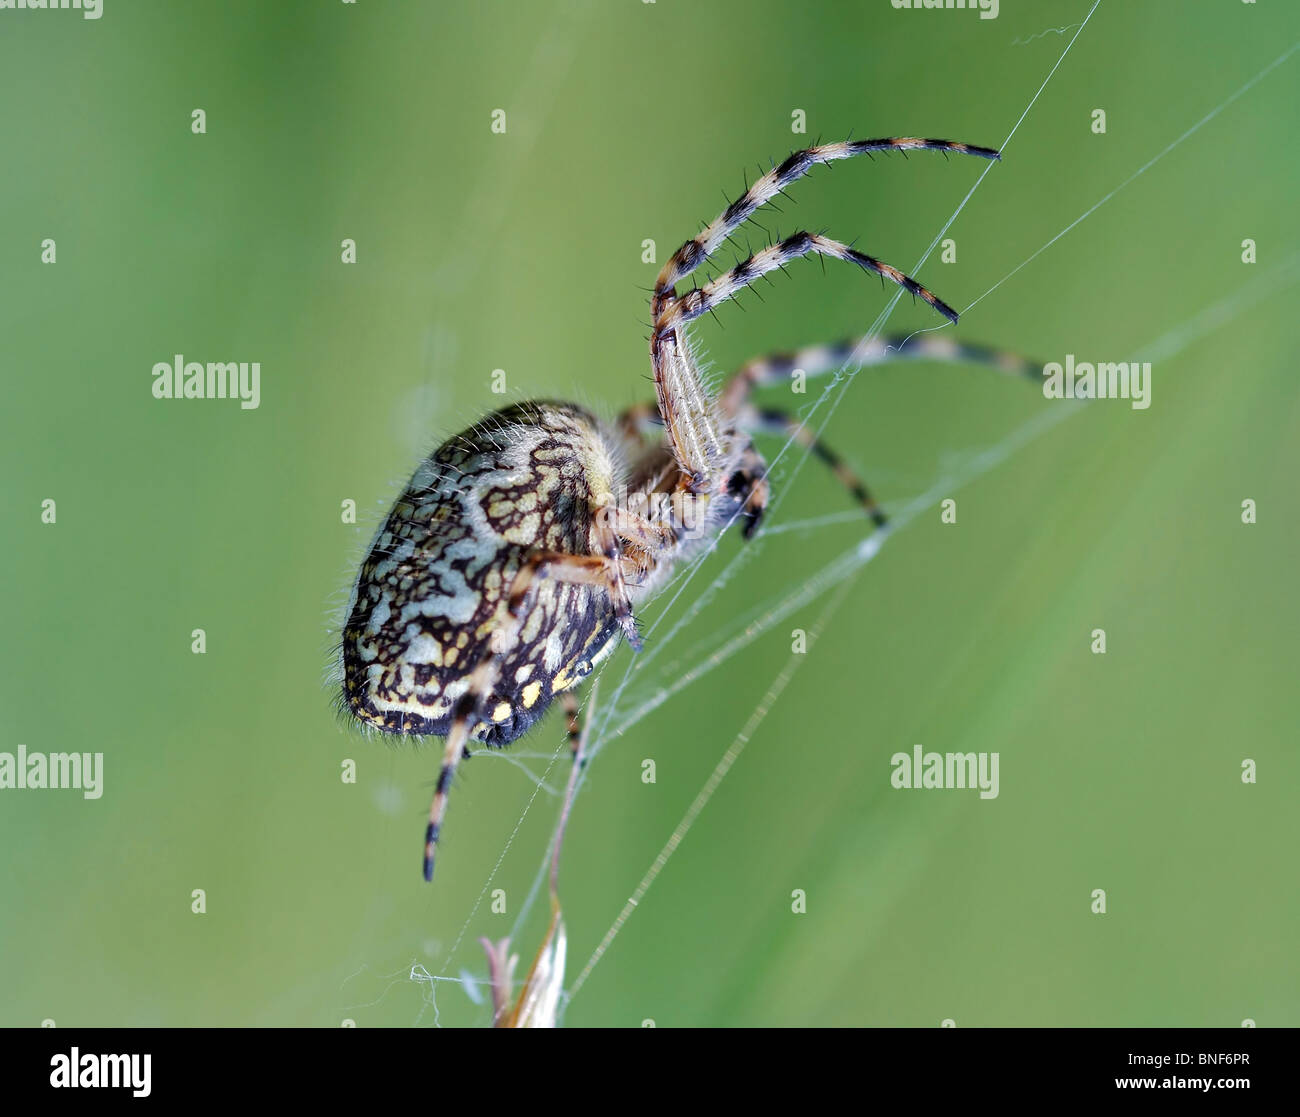 cross spider Stock Photo